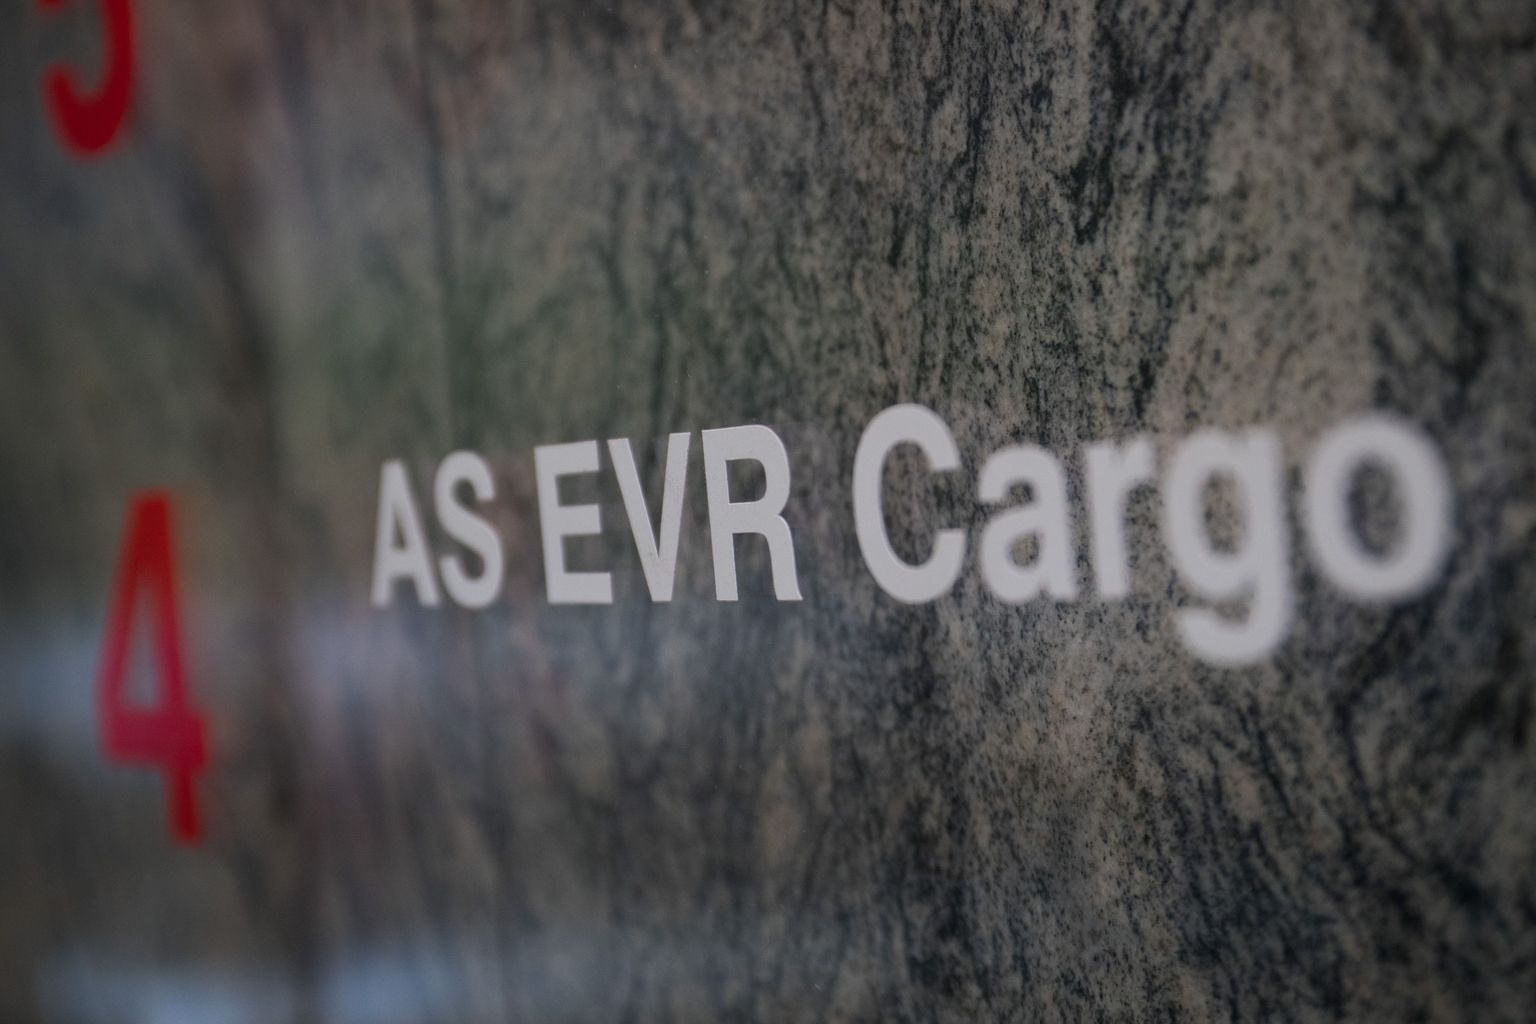 Rahvusvaheline logistikaettevõte AS EVR Cargo.